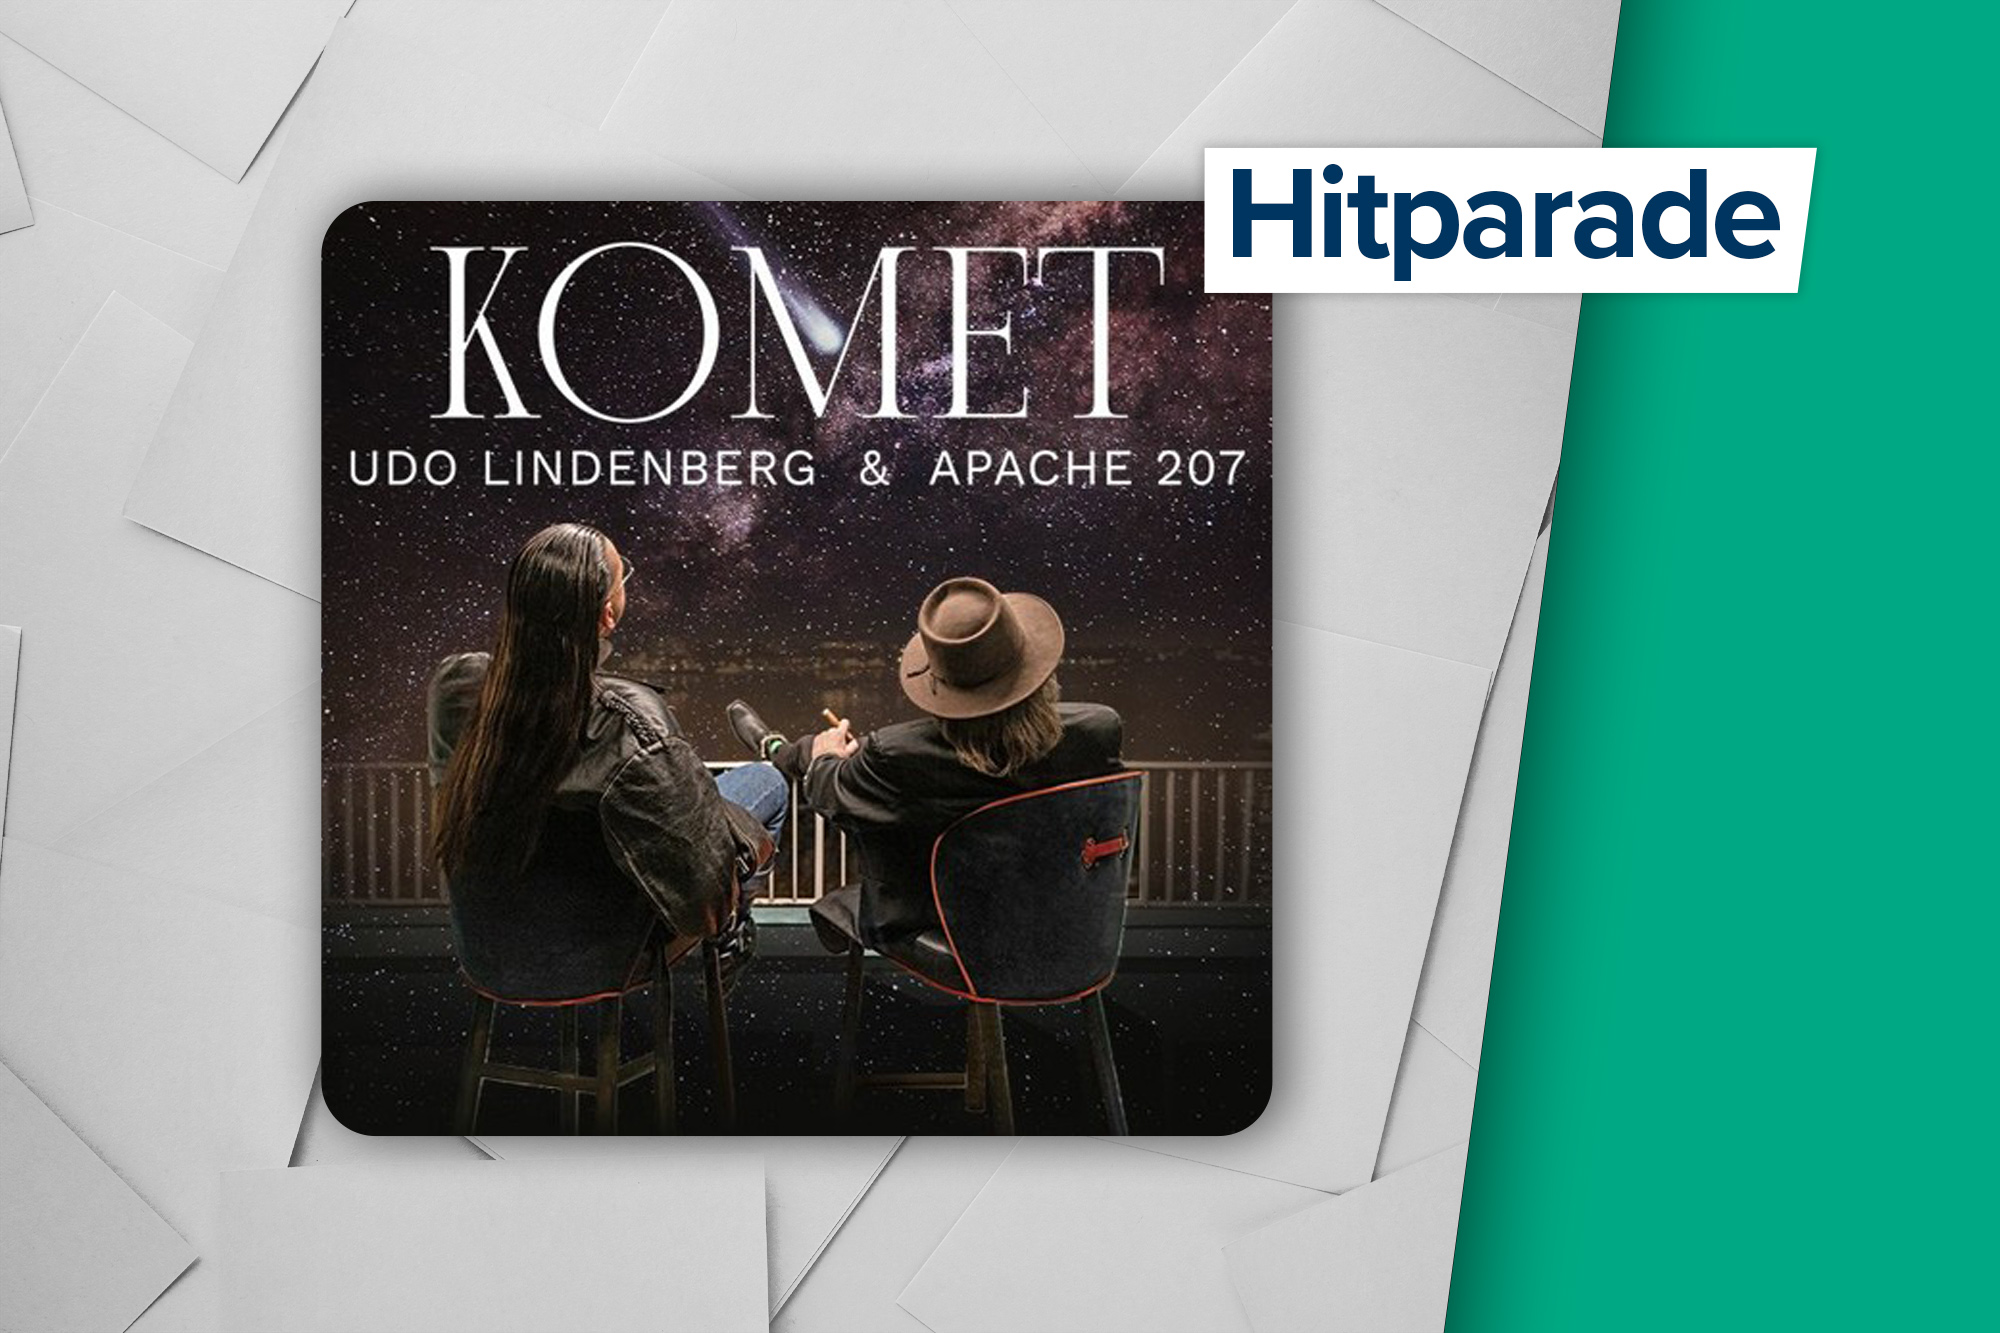 "Komet" von Udo Lindenberg & Apache 207 (Label: Warner Music)